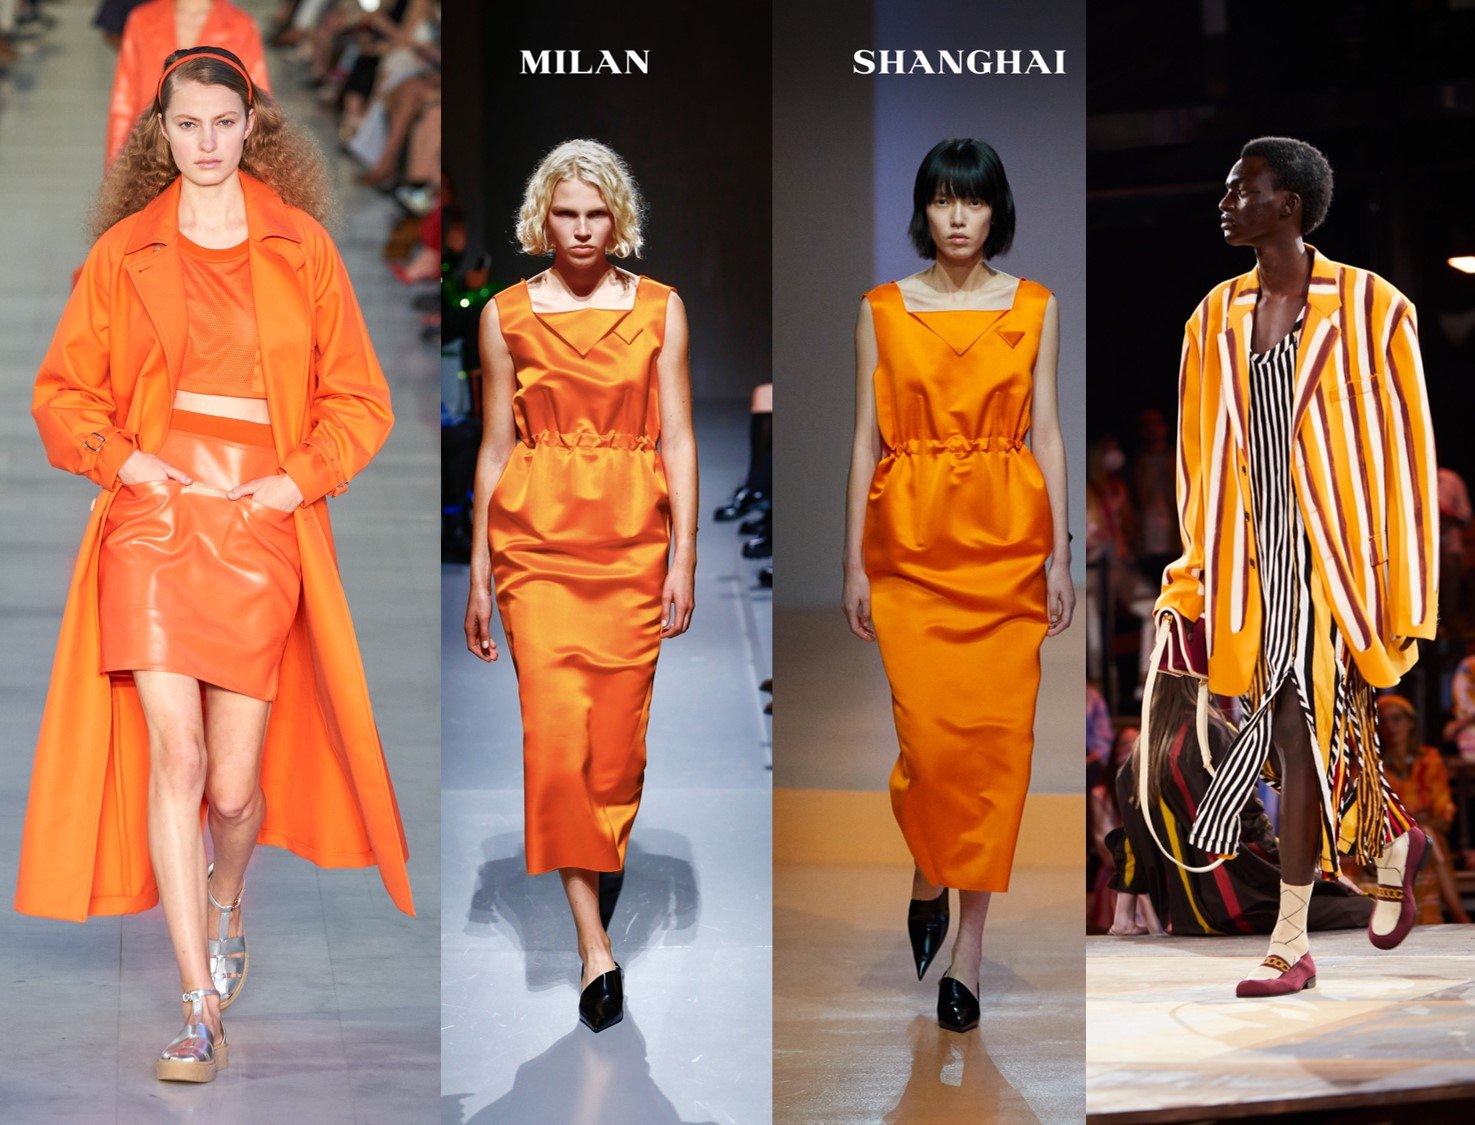 Foto com Look total laranja Max Mara minissaia, top e casaco, vestido Prada e maxi blazer listrado da Marni.